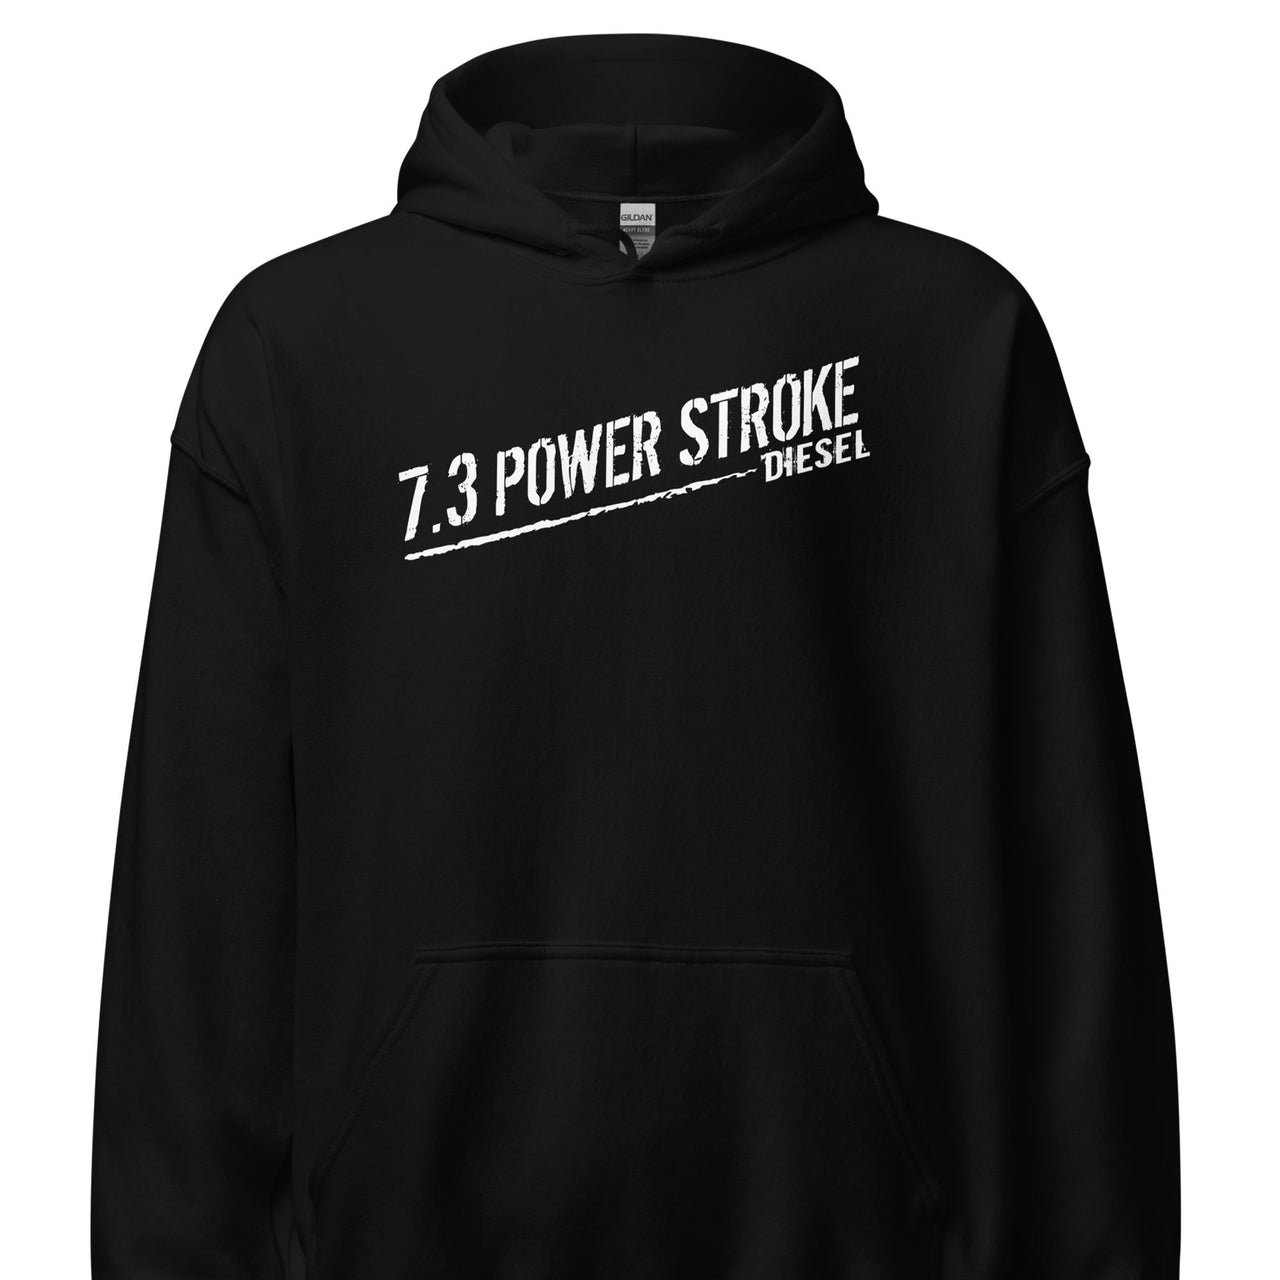 7.3 Power Stroke Diesel Hoodie, American Flag Sweatshirt front in black